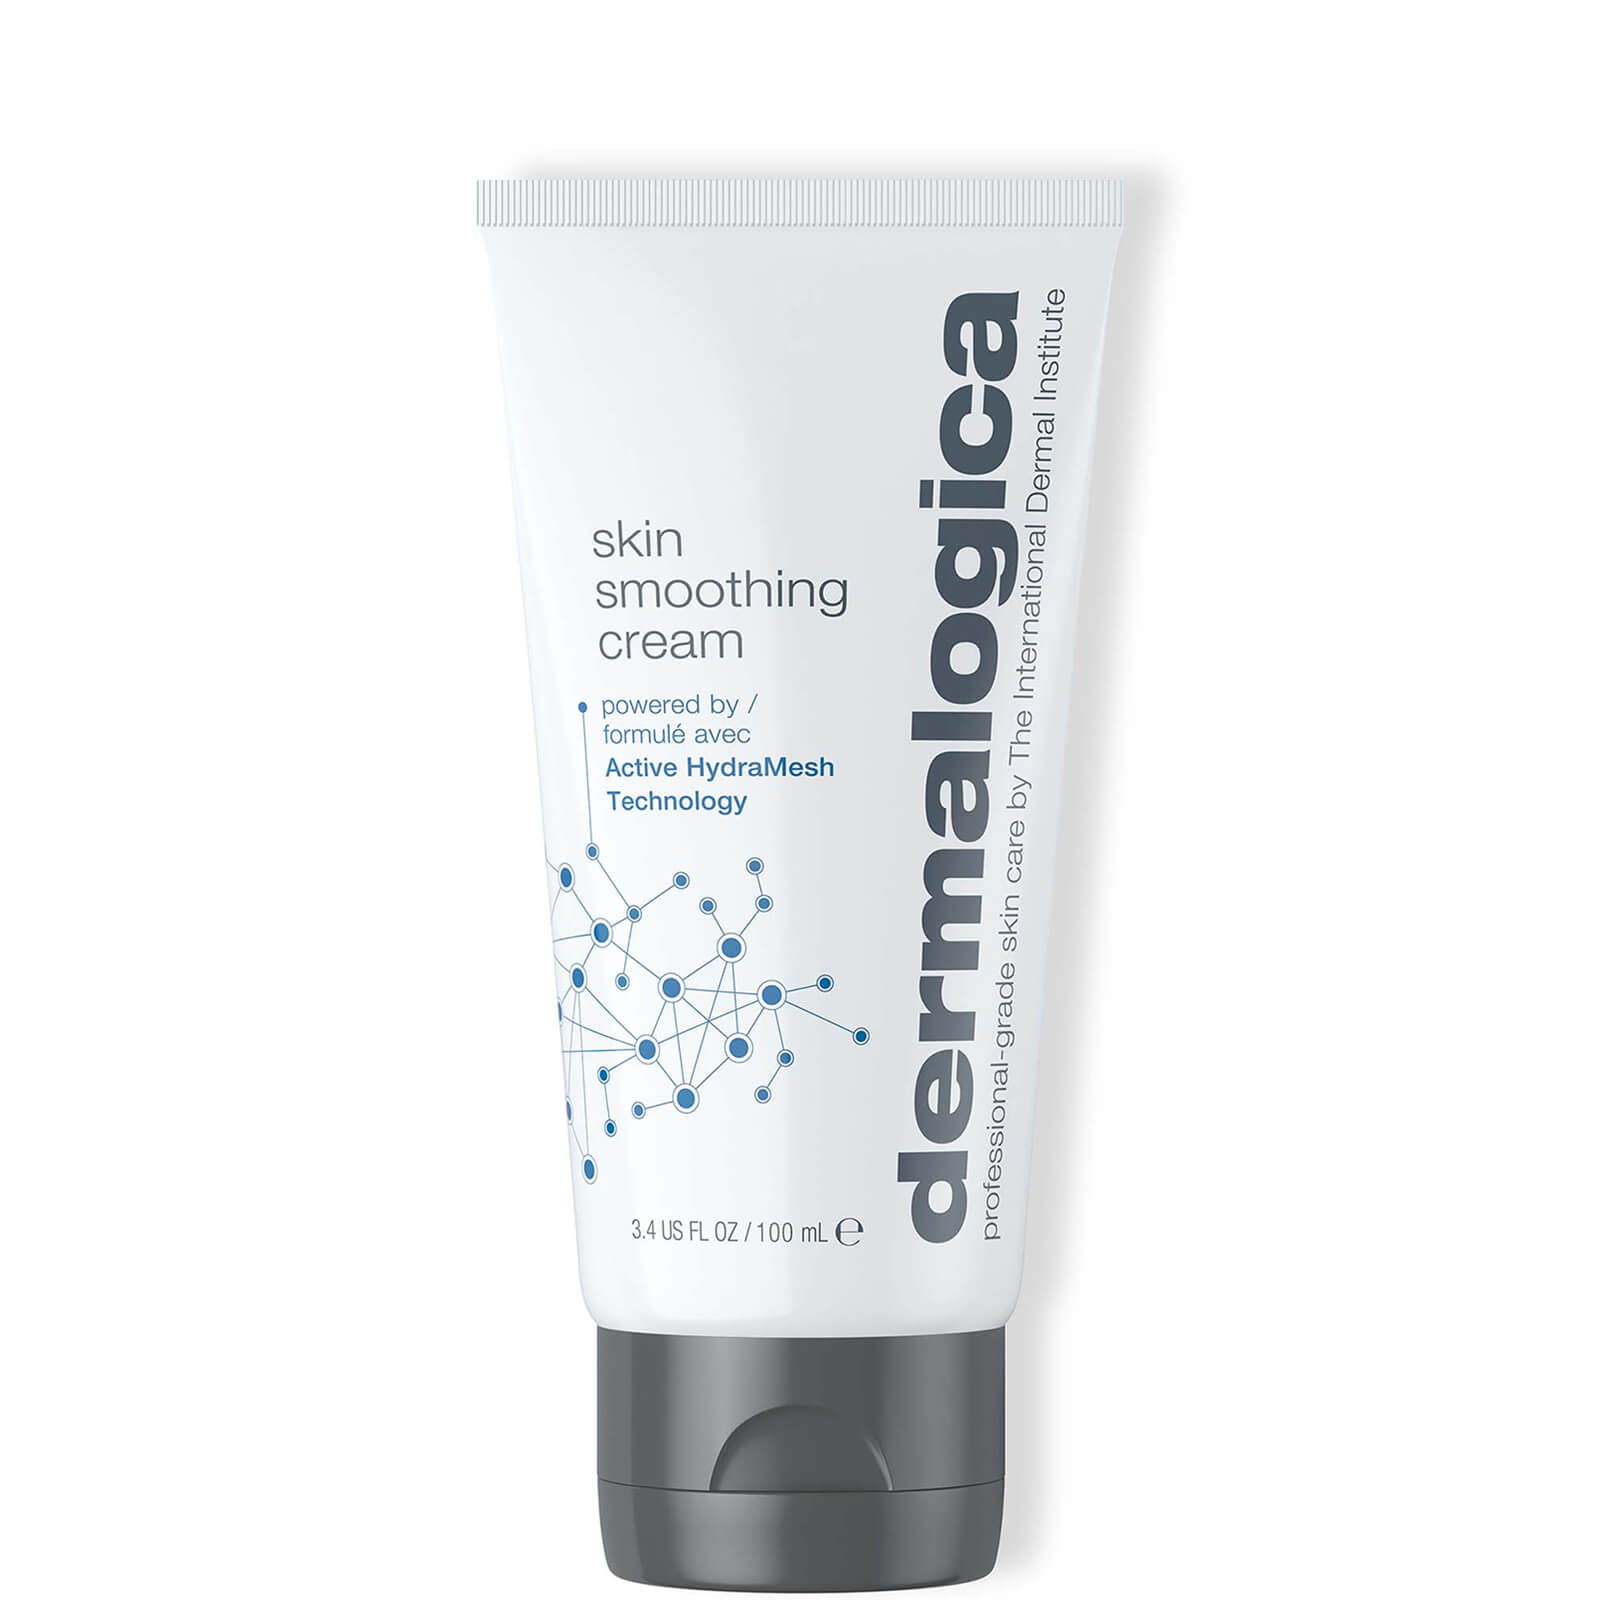 skin smoothing cream dermalogica 100 ml